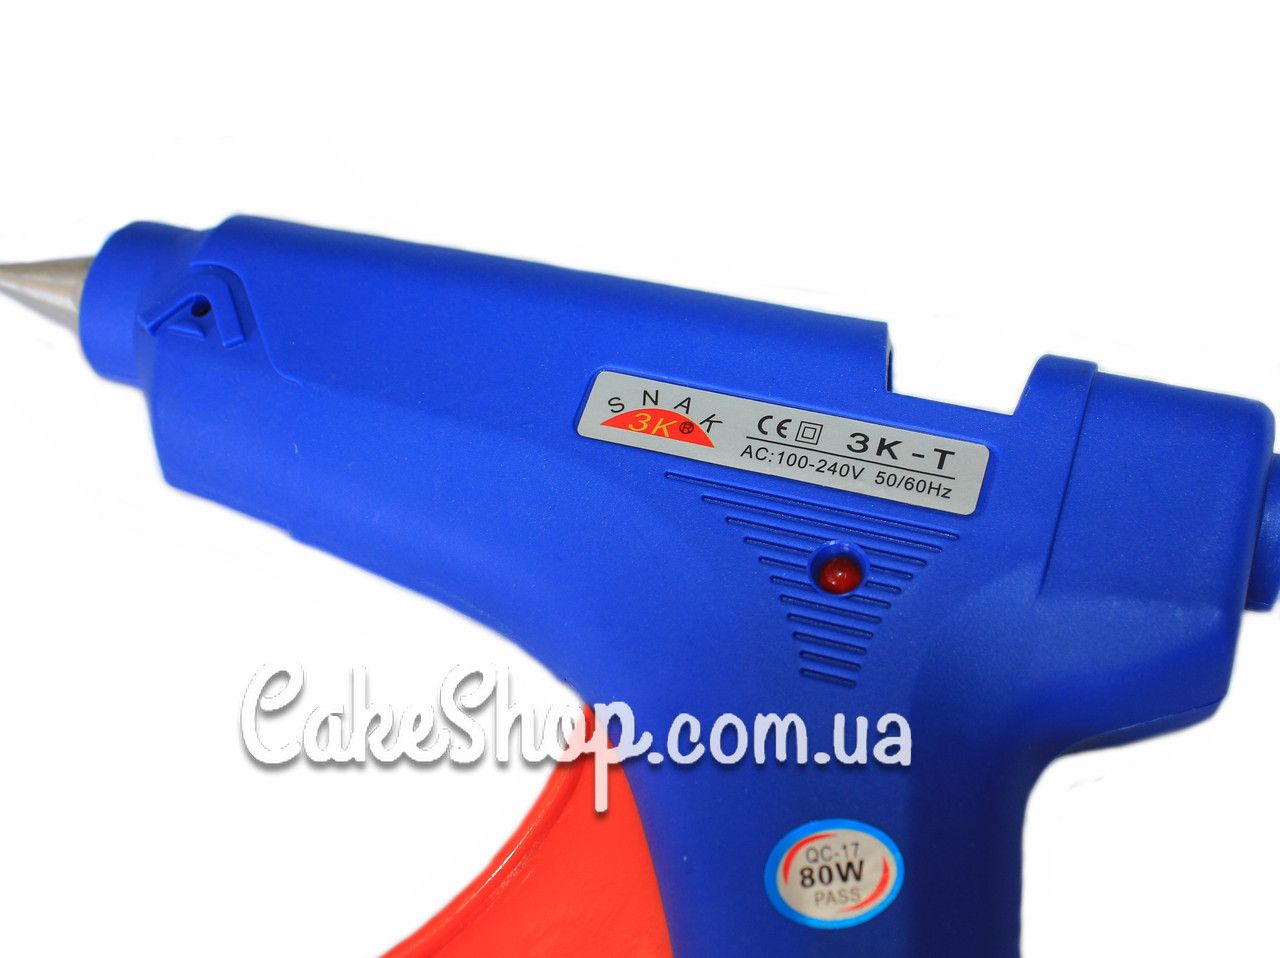 ⋗ Клеевой пистолет Snak (80W, 110-240V), 11mm купить в Украине ➛ CakeShop.com.ua, фото